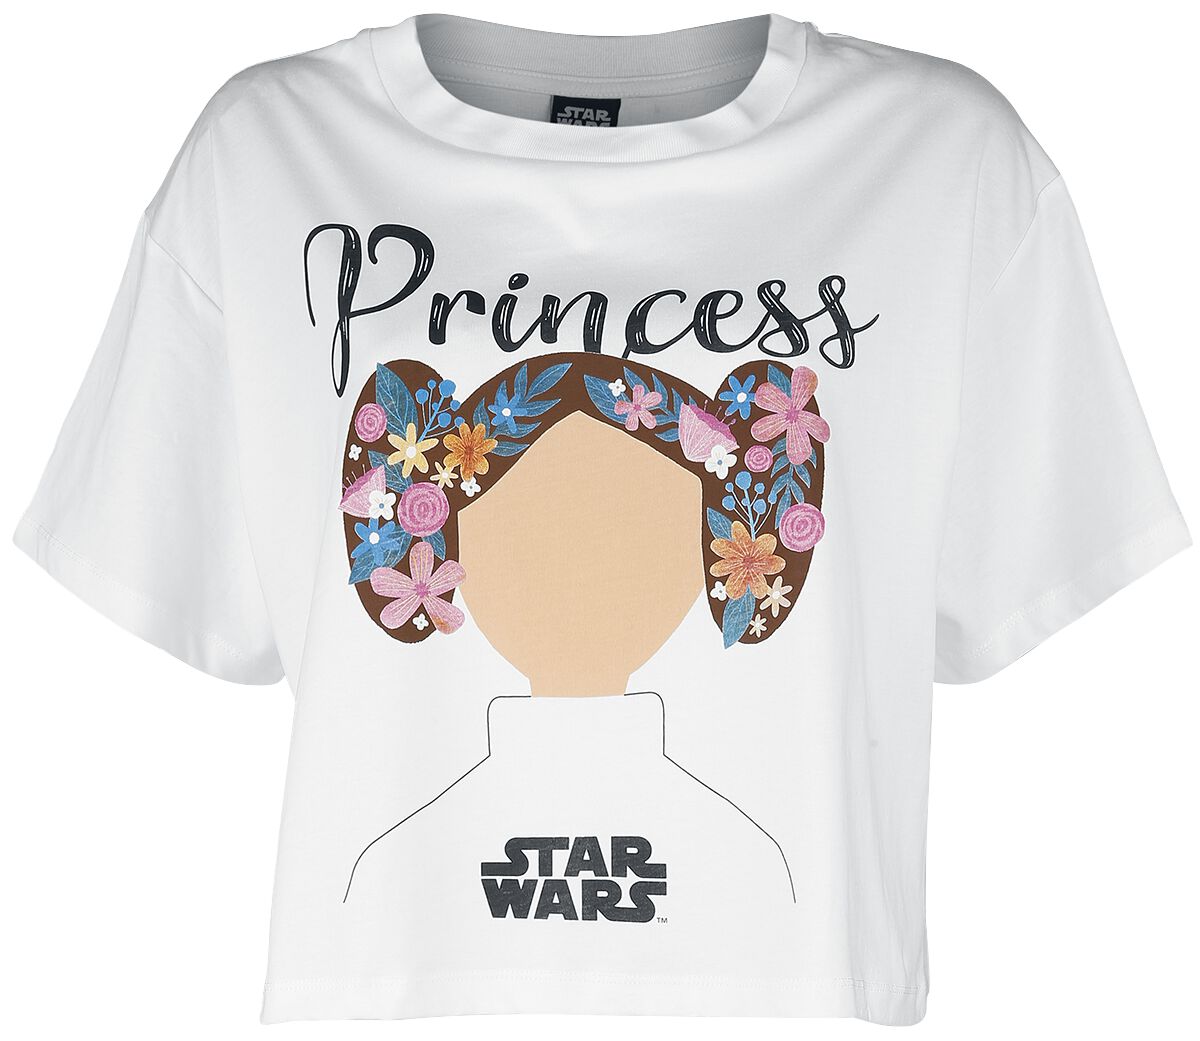 T-Shirt Manches courtes de Star Wars - Star Wars - Princess Lea - S à XXL - pour Femme - blanc